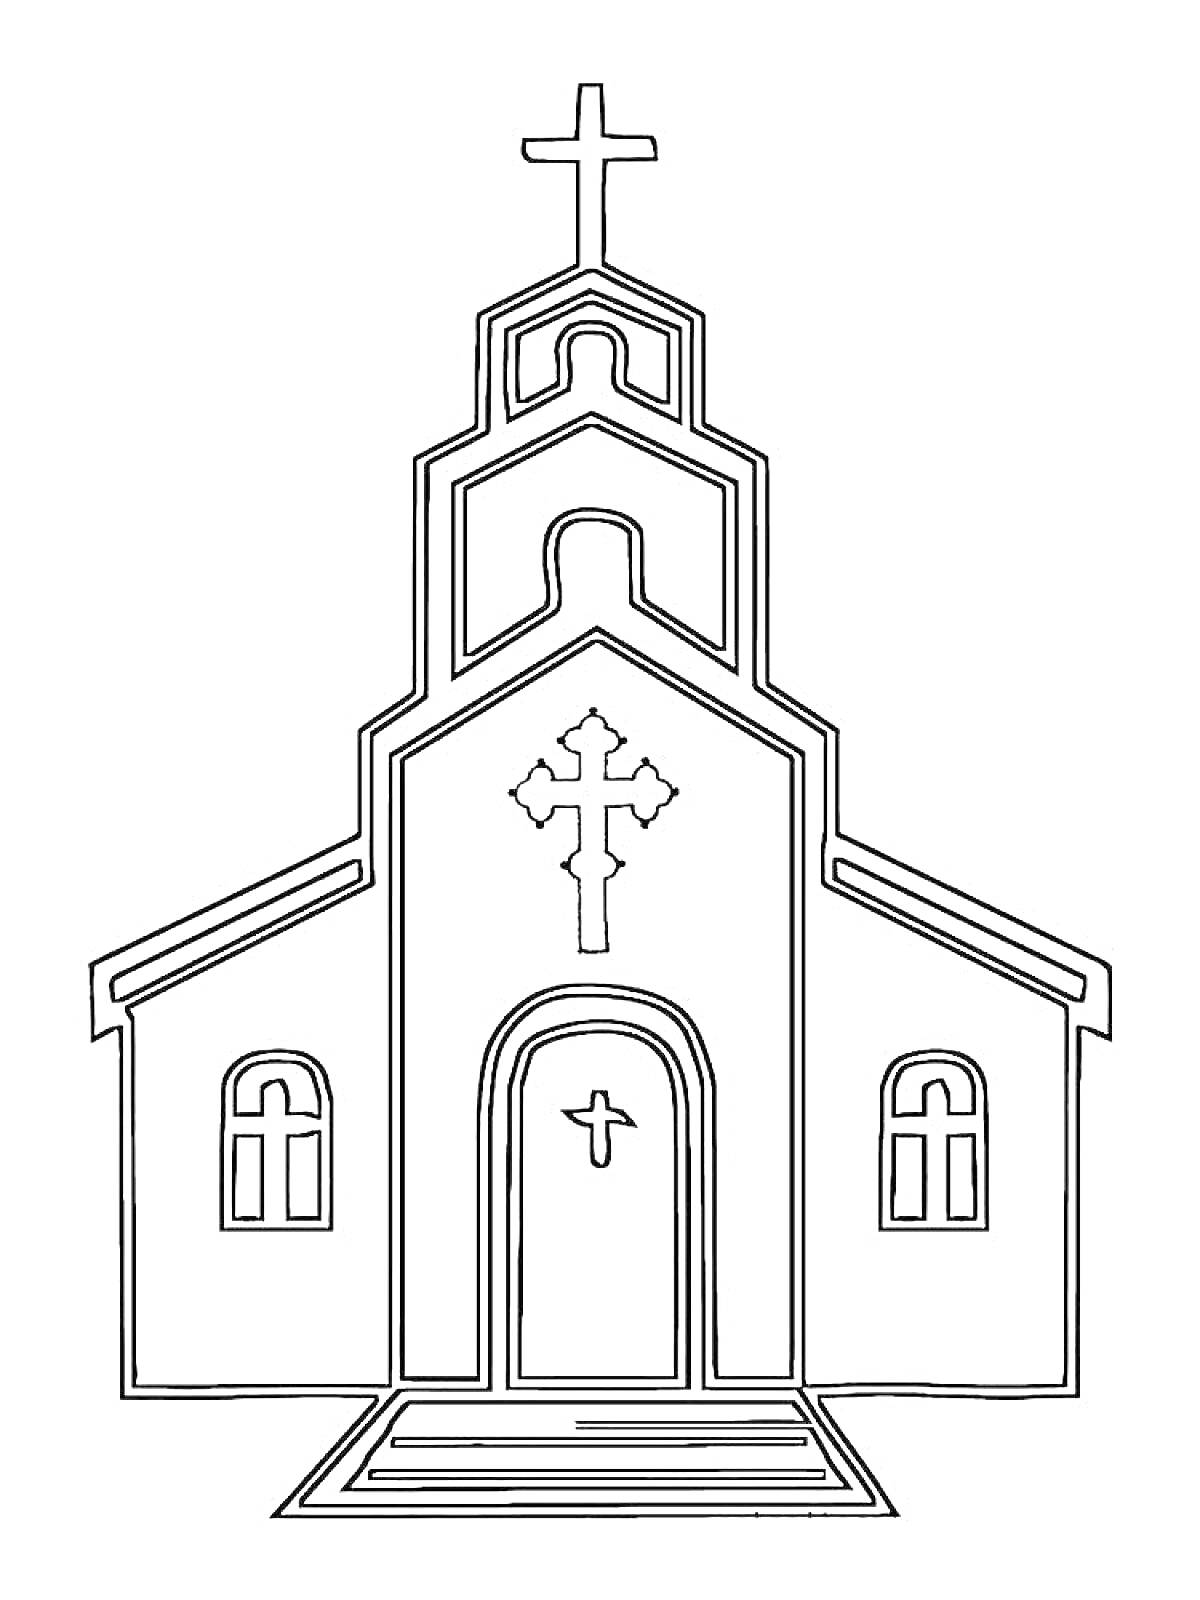 Раскраска Храм с двумя окнами, входной дверью с маленьким крестом, большим крестом над дверью, и крестом на вершине башни